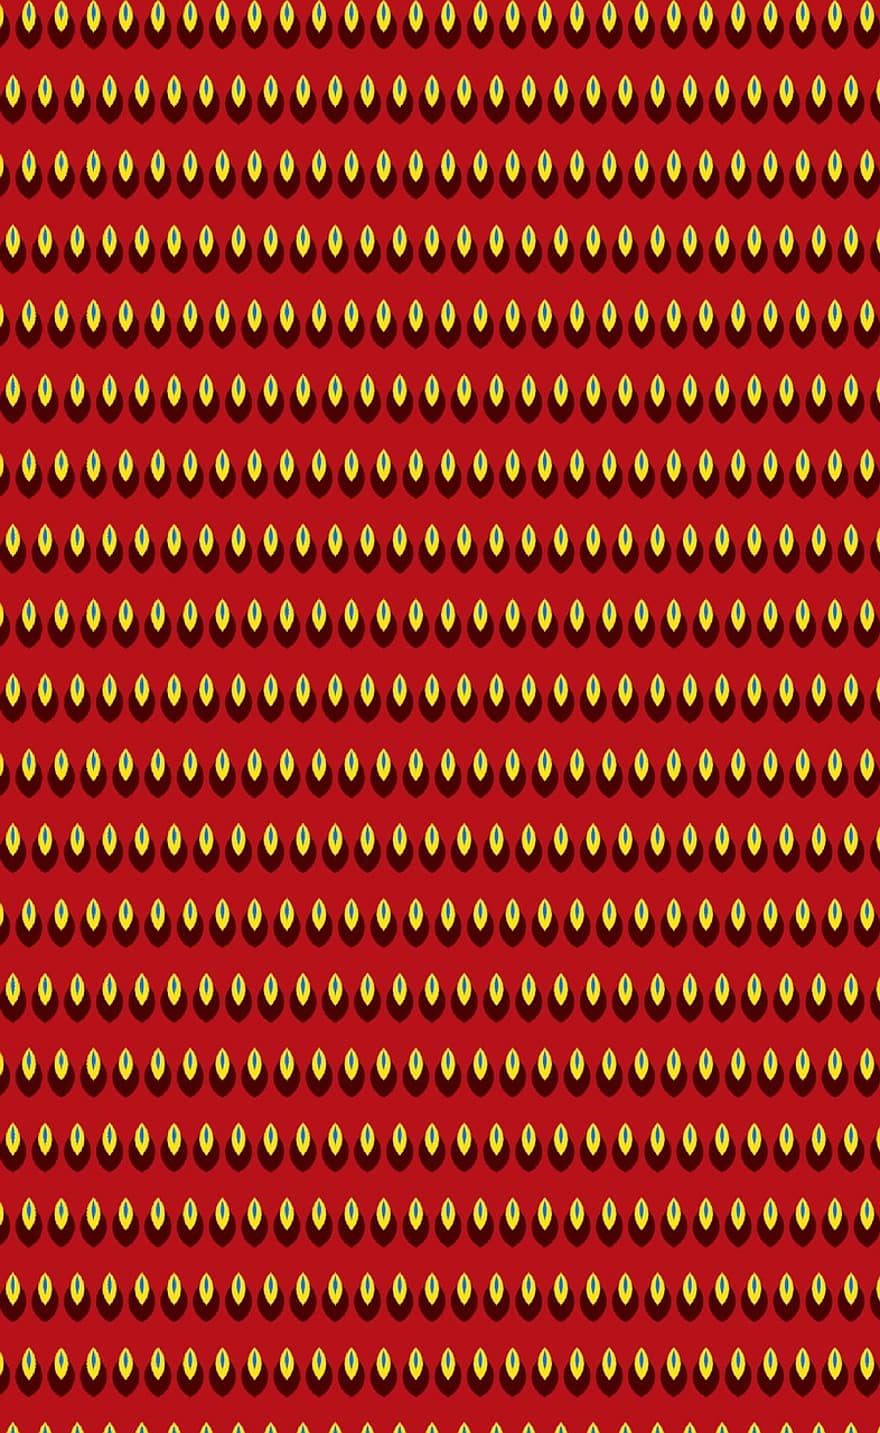 patroon, achtergrond, ontwerp, structuur, kleuren, rode achtergrond, rode textuur, Rood ontwerp, rood patroon